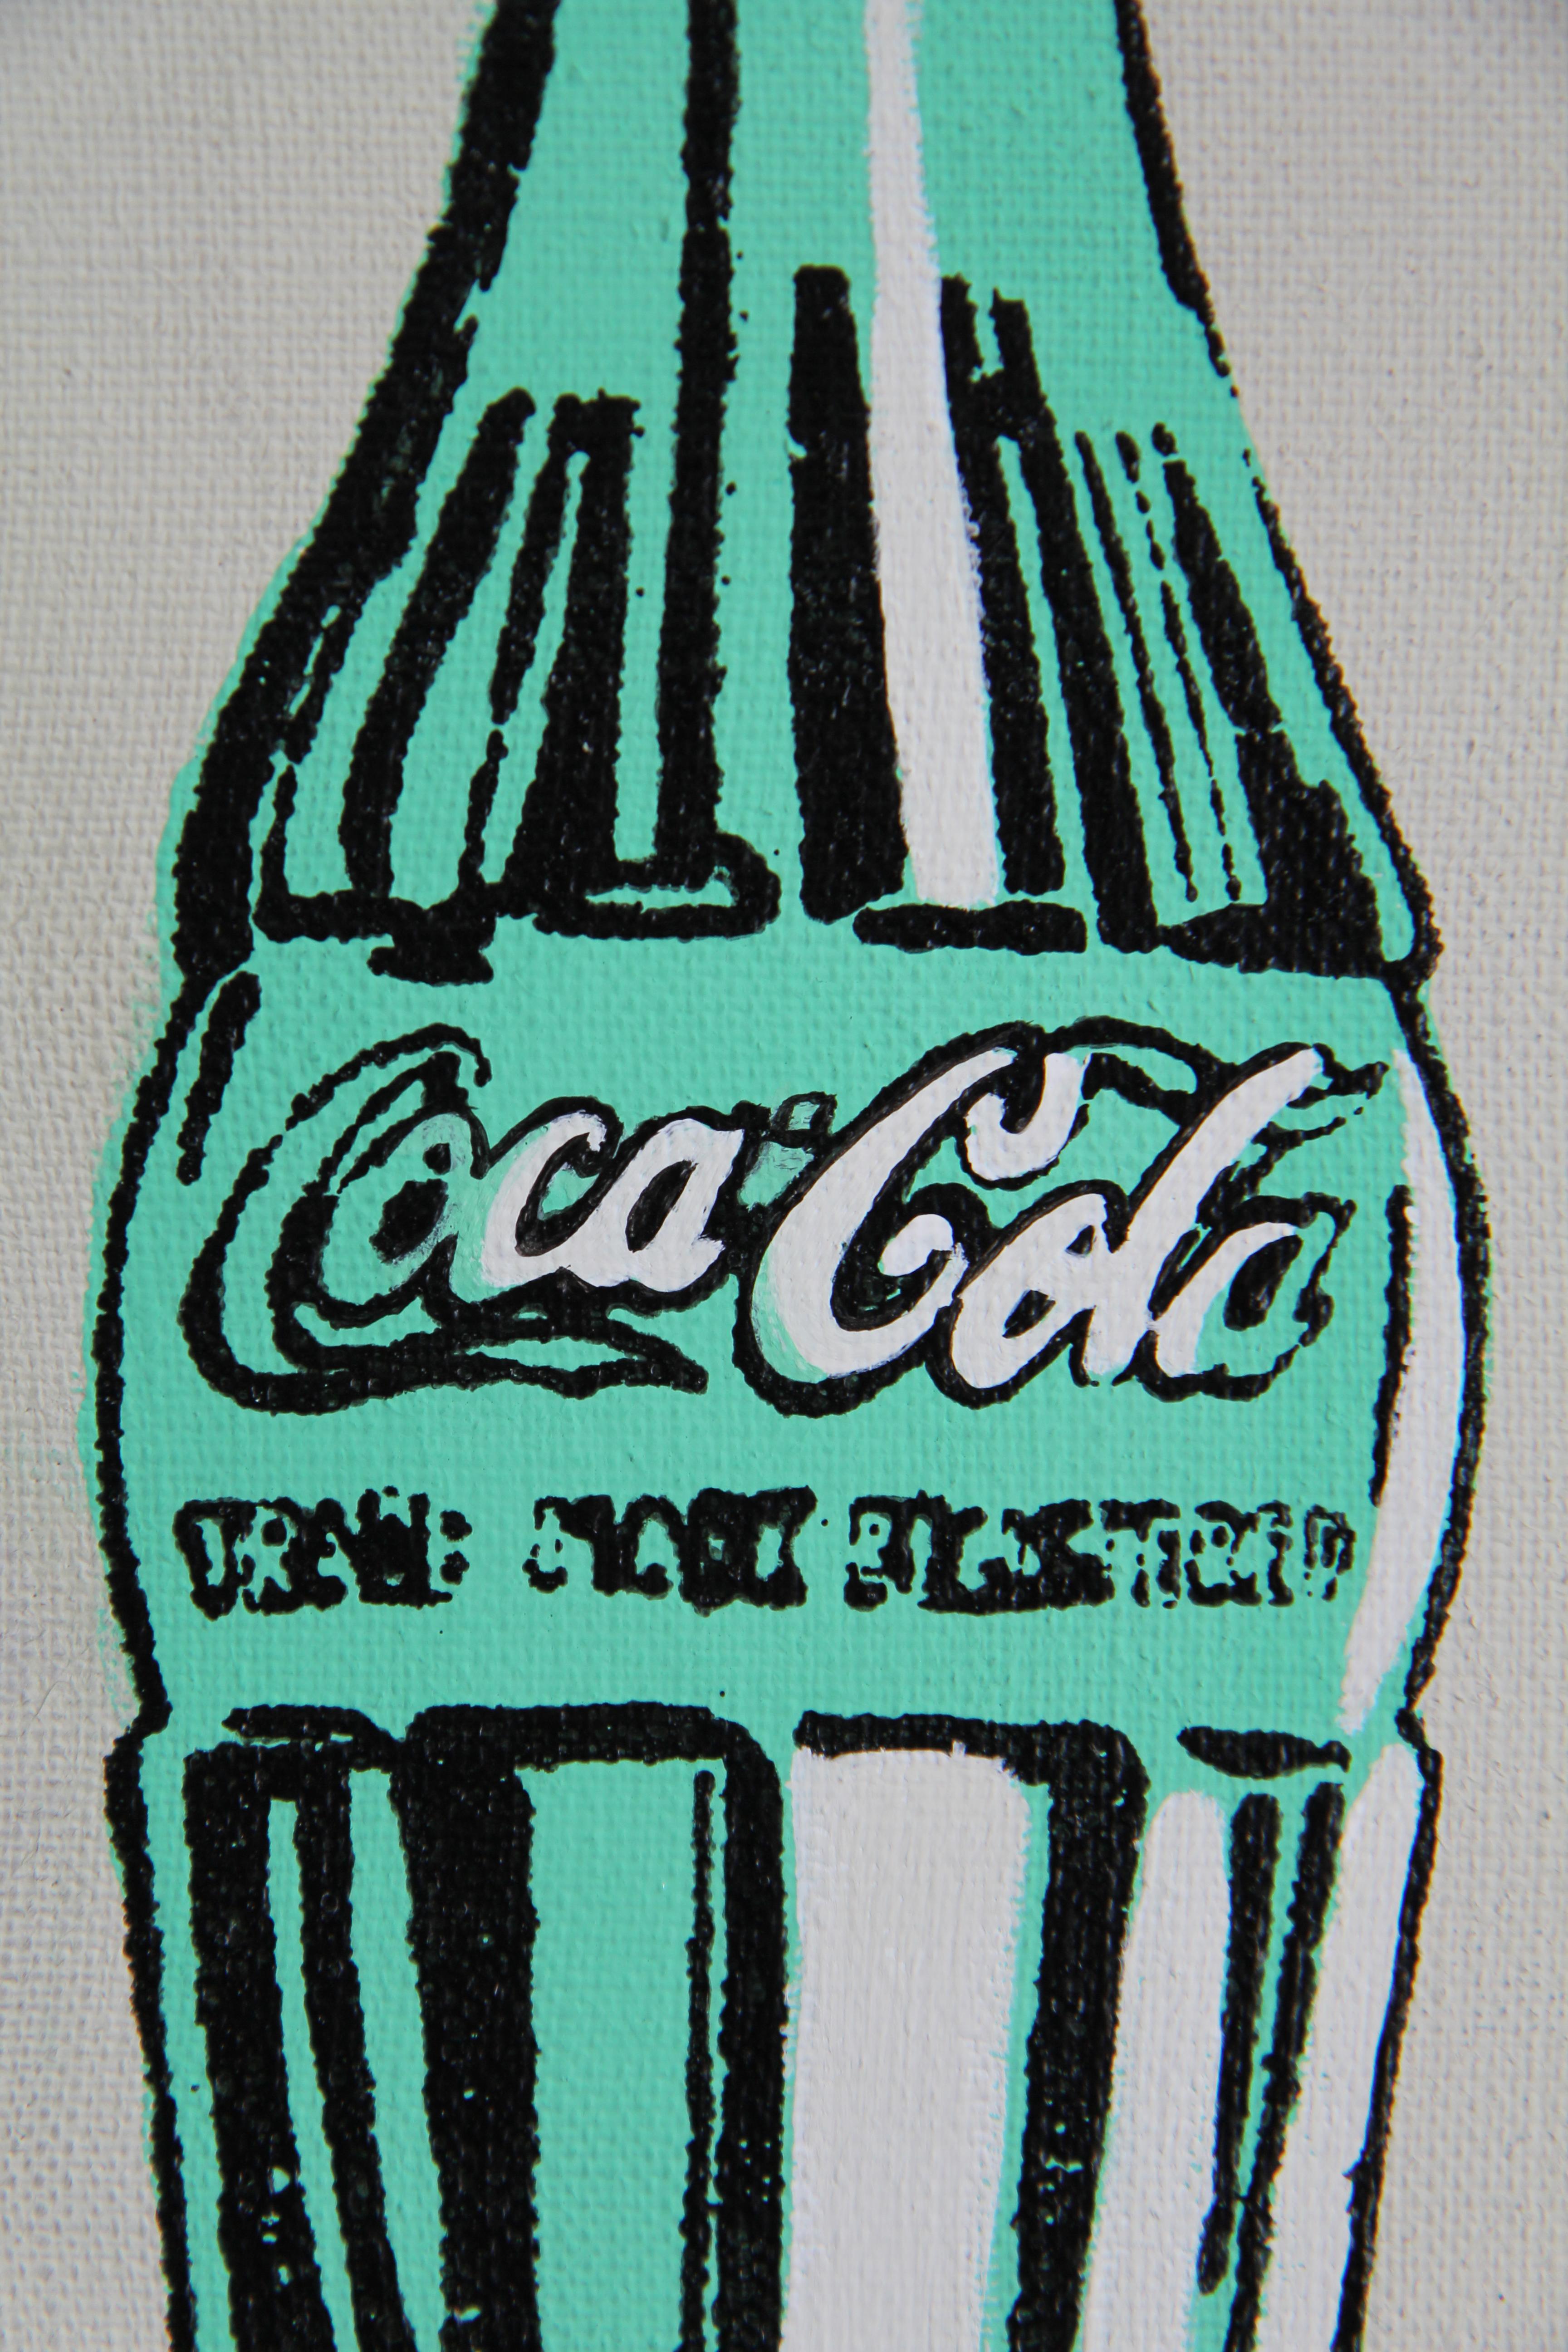 green coke bottle